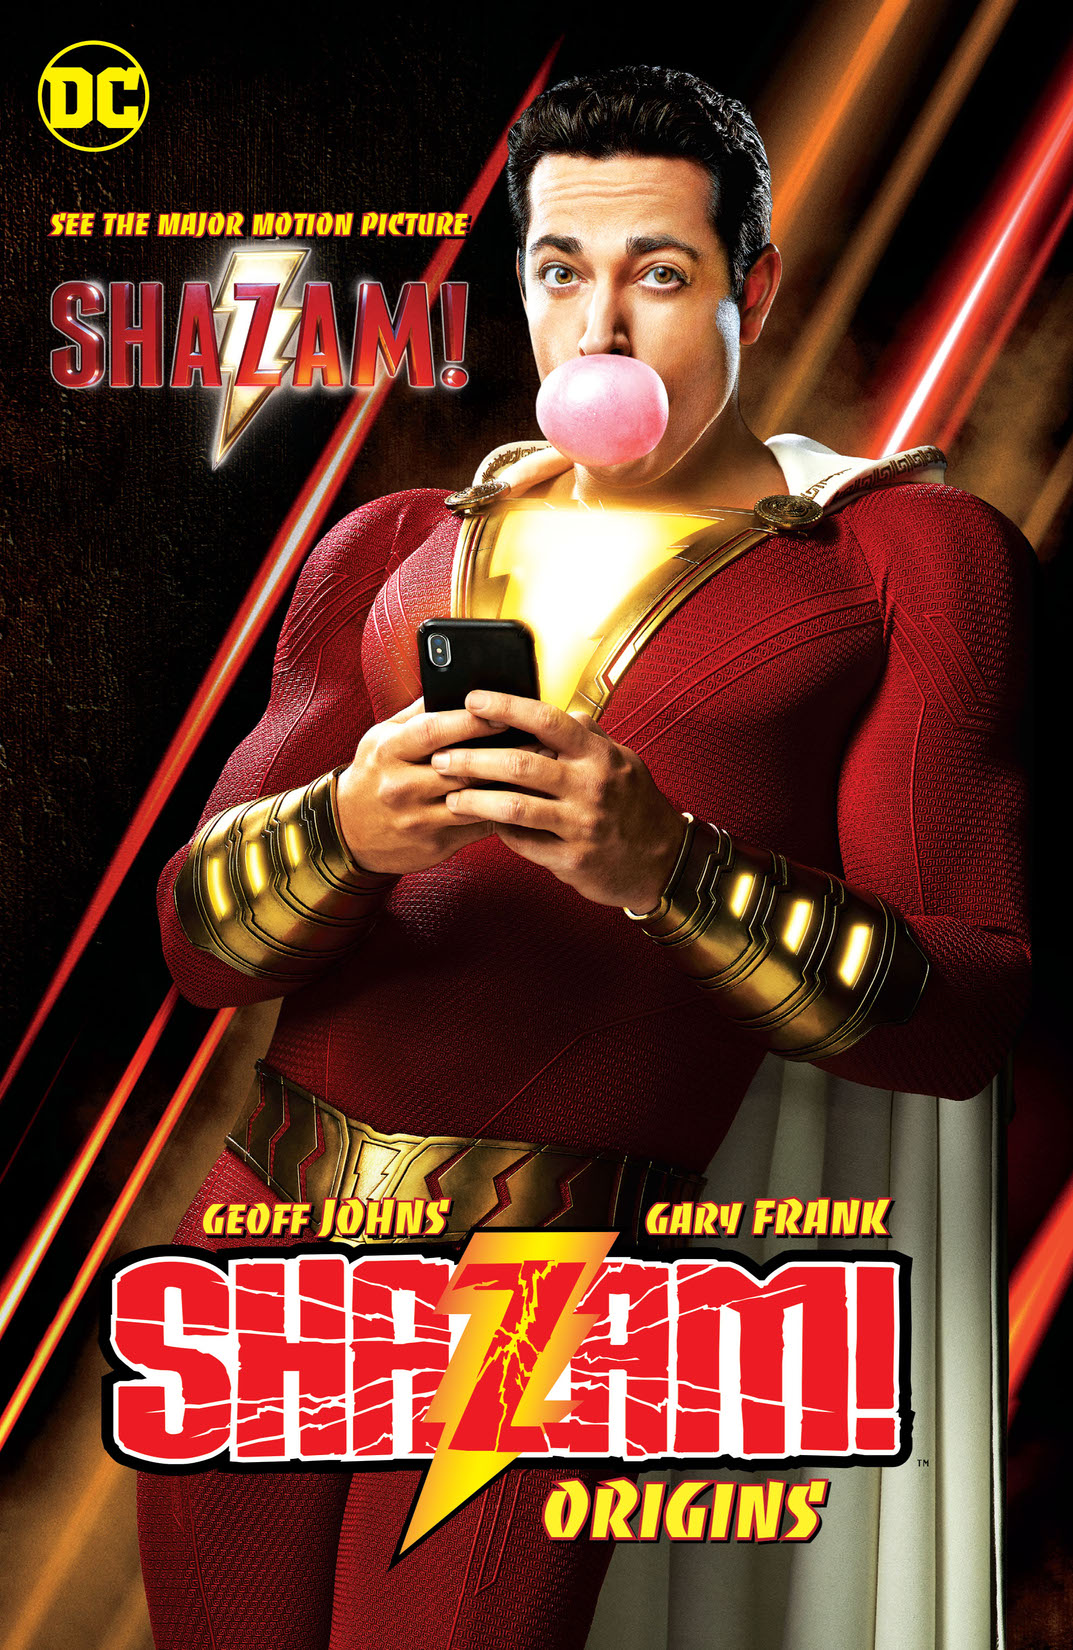 Shazam!: Origins preview images